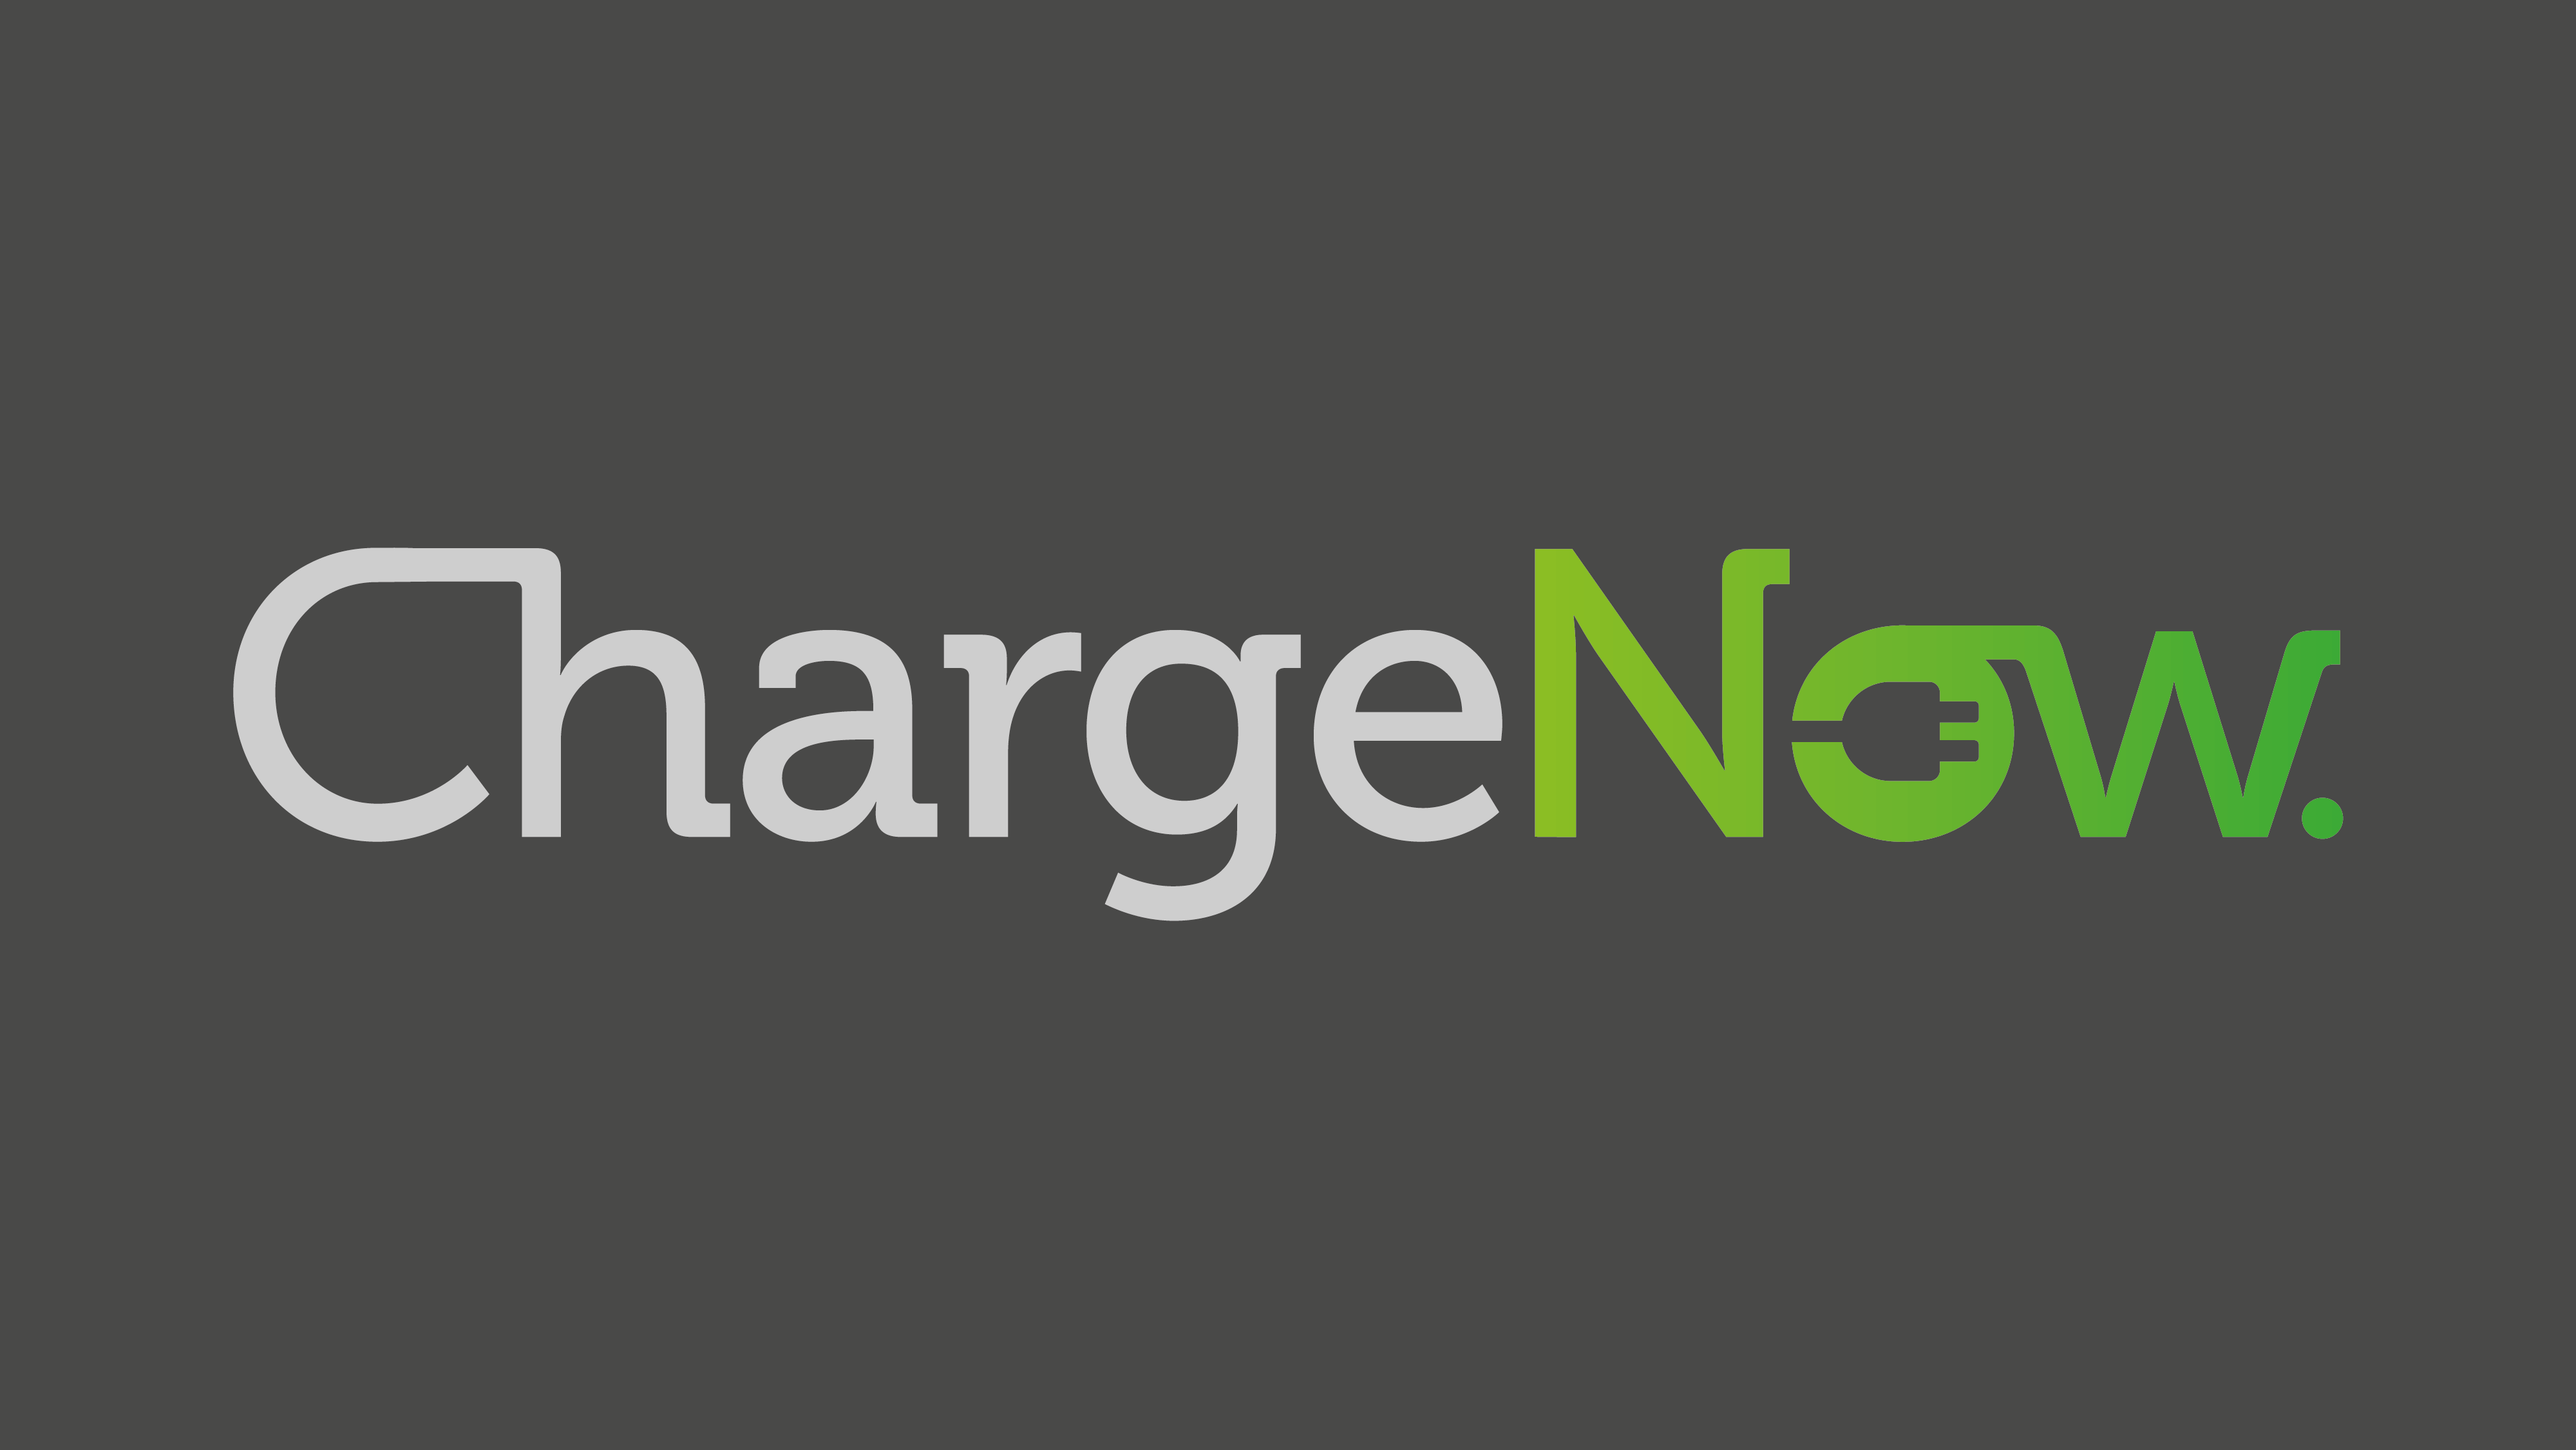 ChargeNow logo kleur_Tekengebied 1 kopie 2